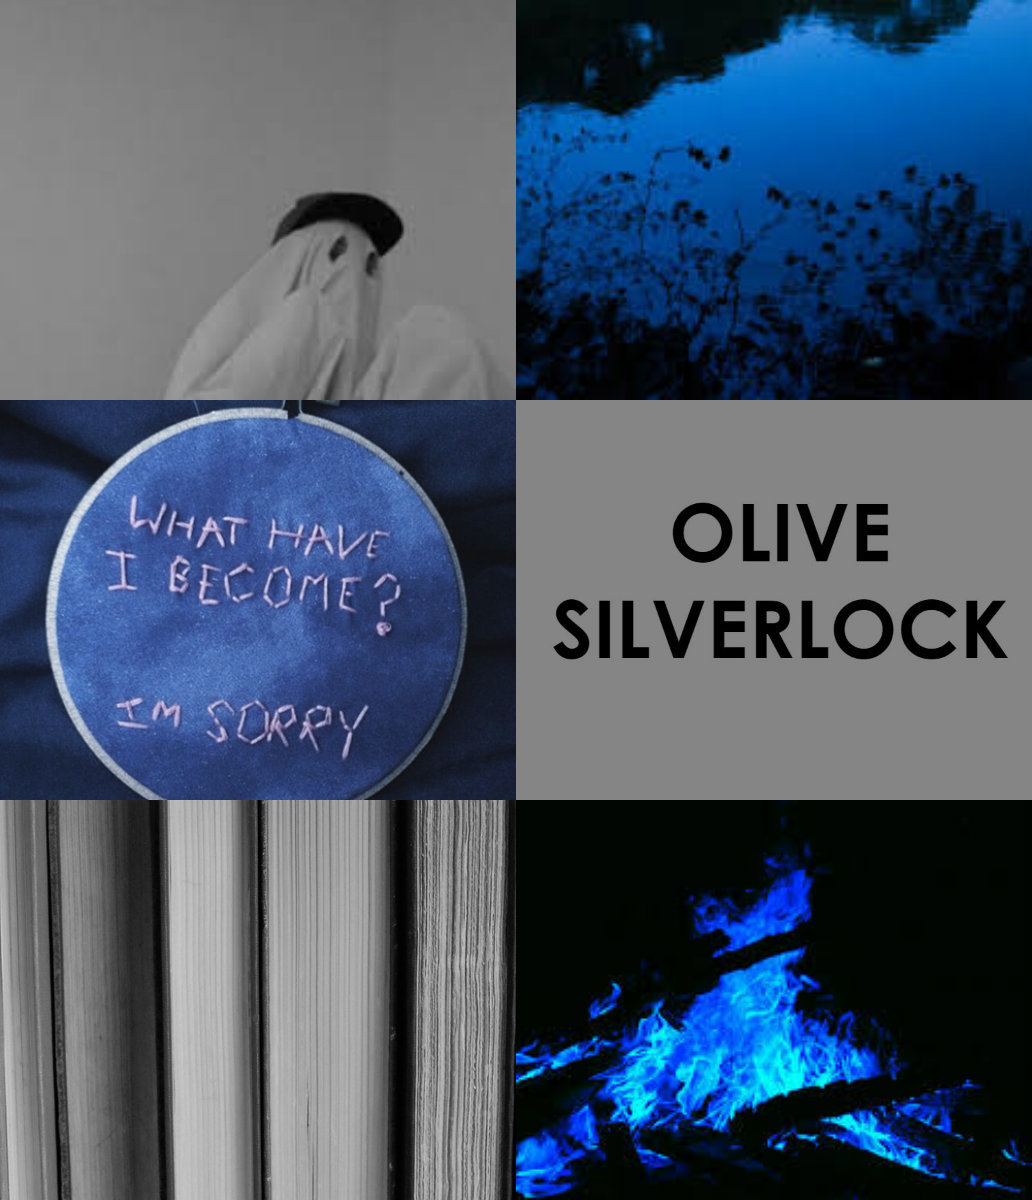 silverlock obse